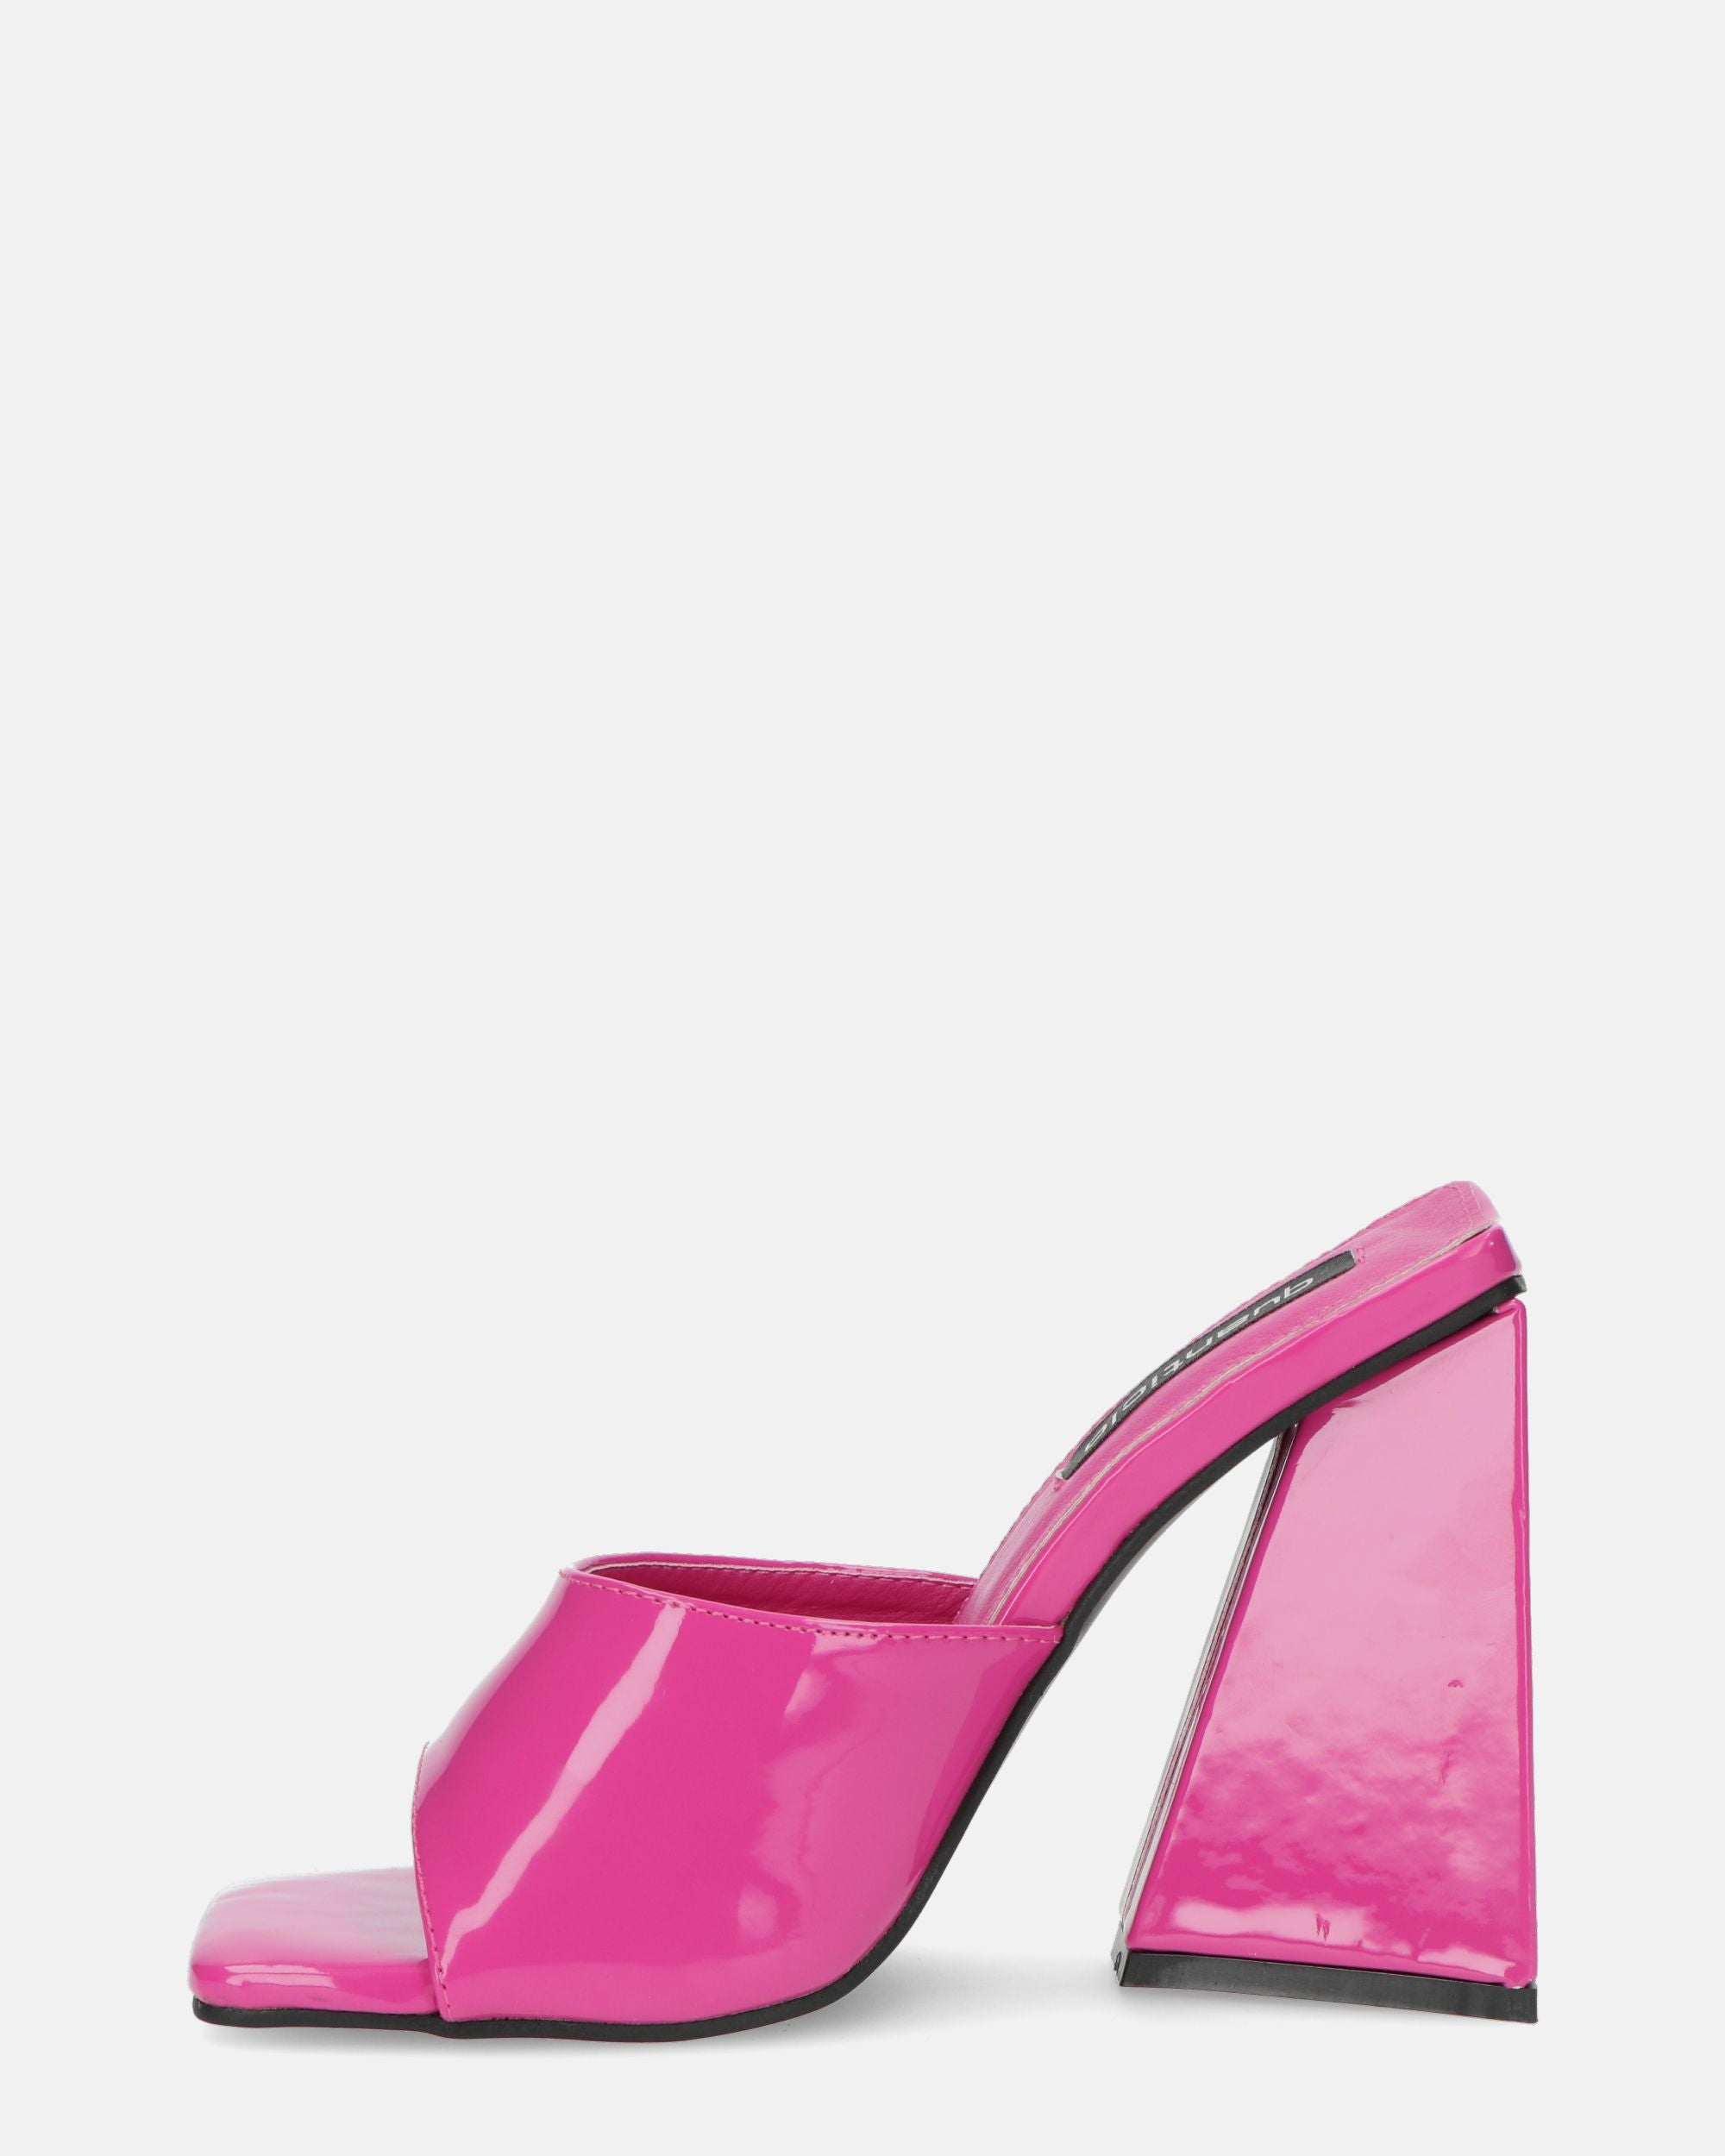 KAMELYA - scarpe con tacco squadrato in glassy viola